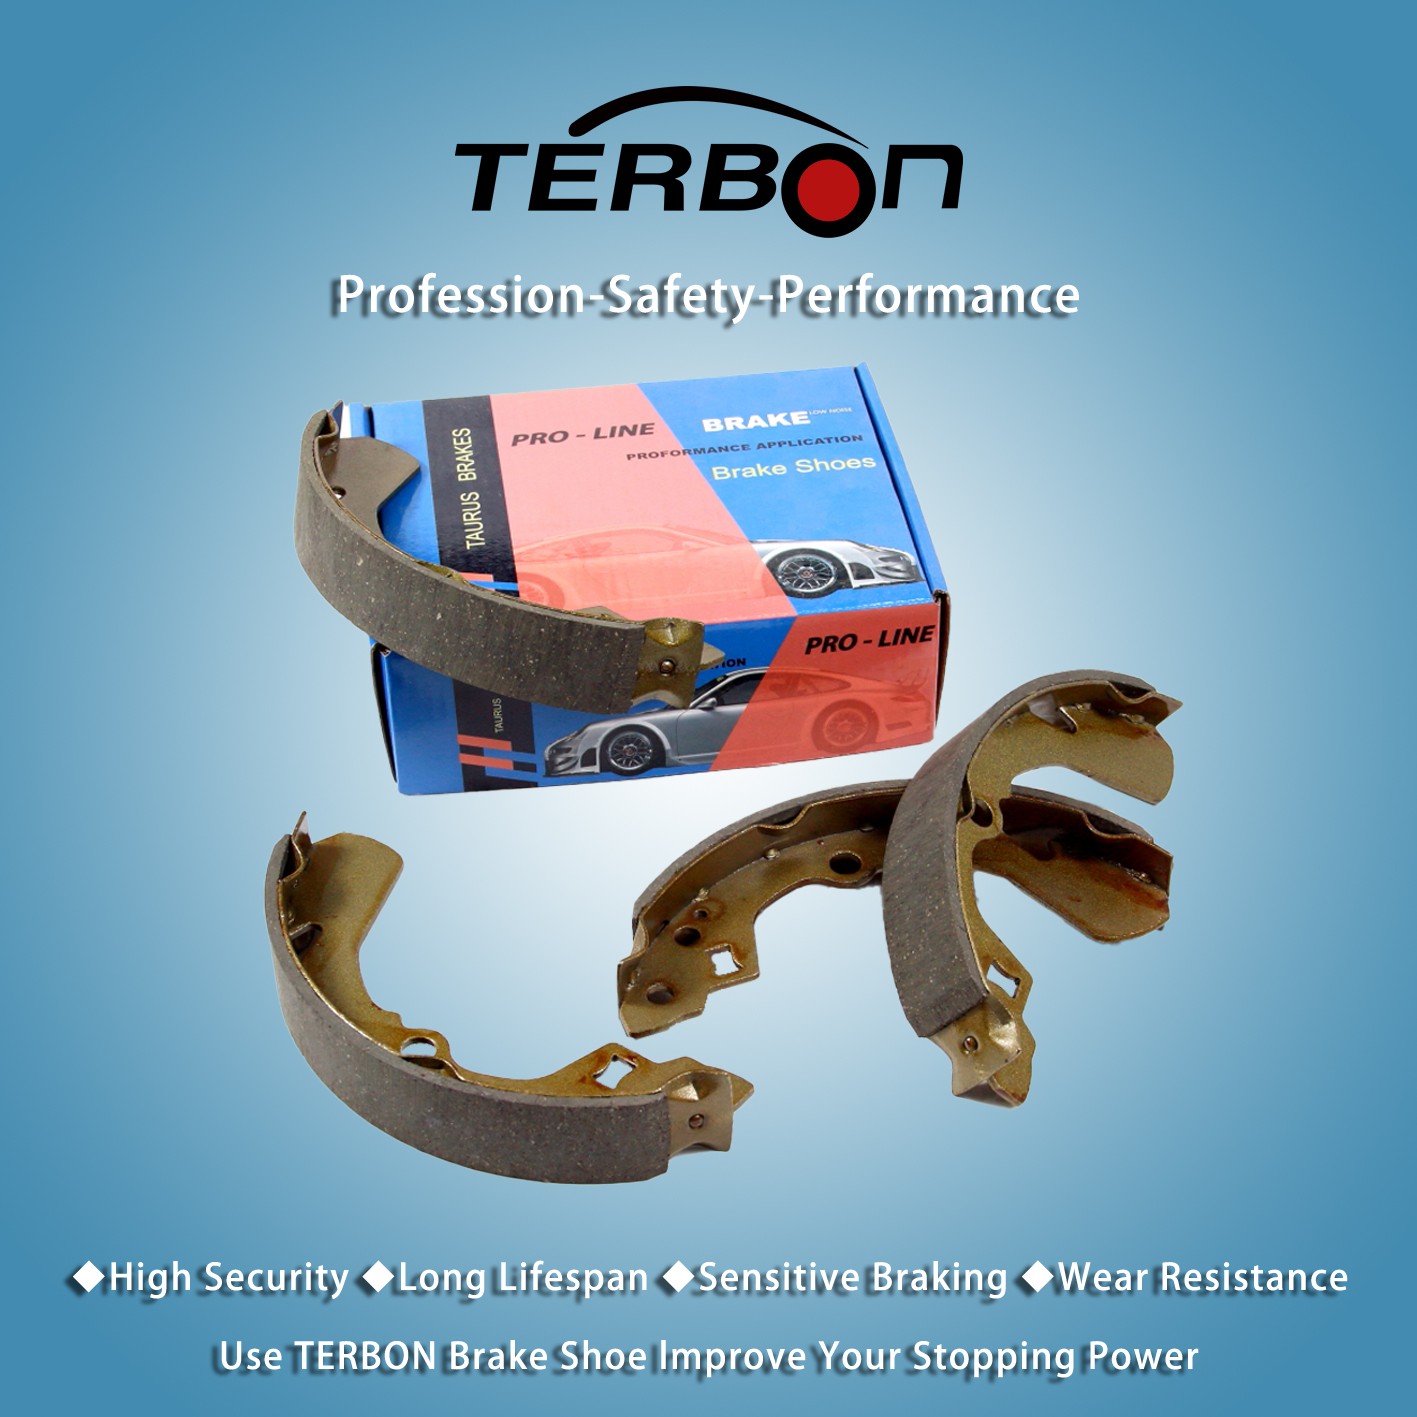 Terbon-ը թողարկում է նոր բարձրորակ առջևի առանցքի արգելակային կոշիկներ՝ մեքենաների արգելակման արդյունավետությունը բարելավելու համար